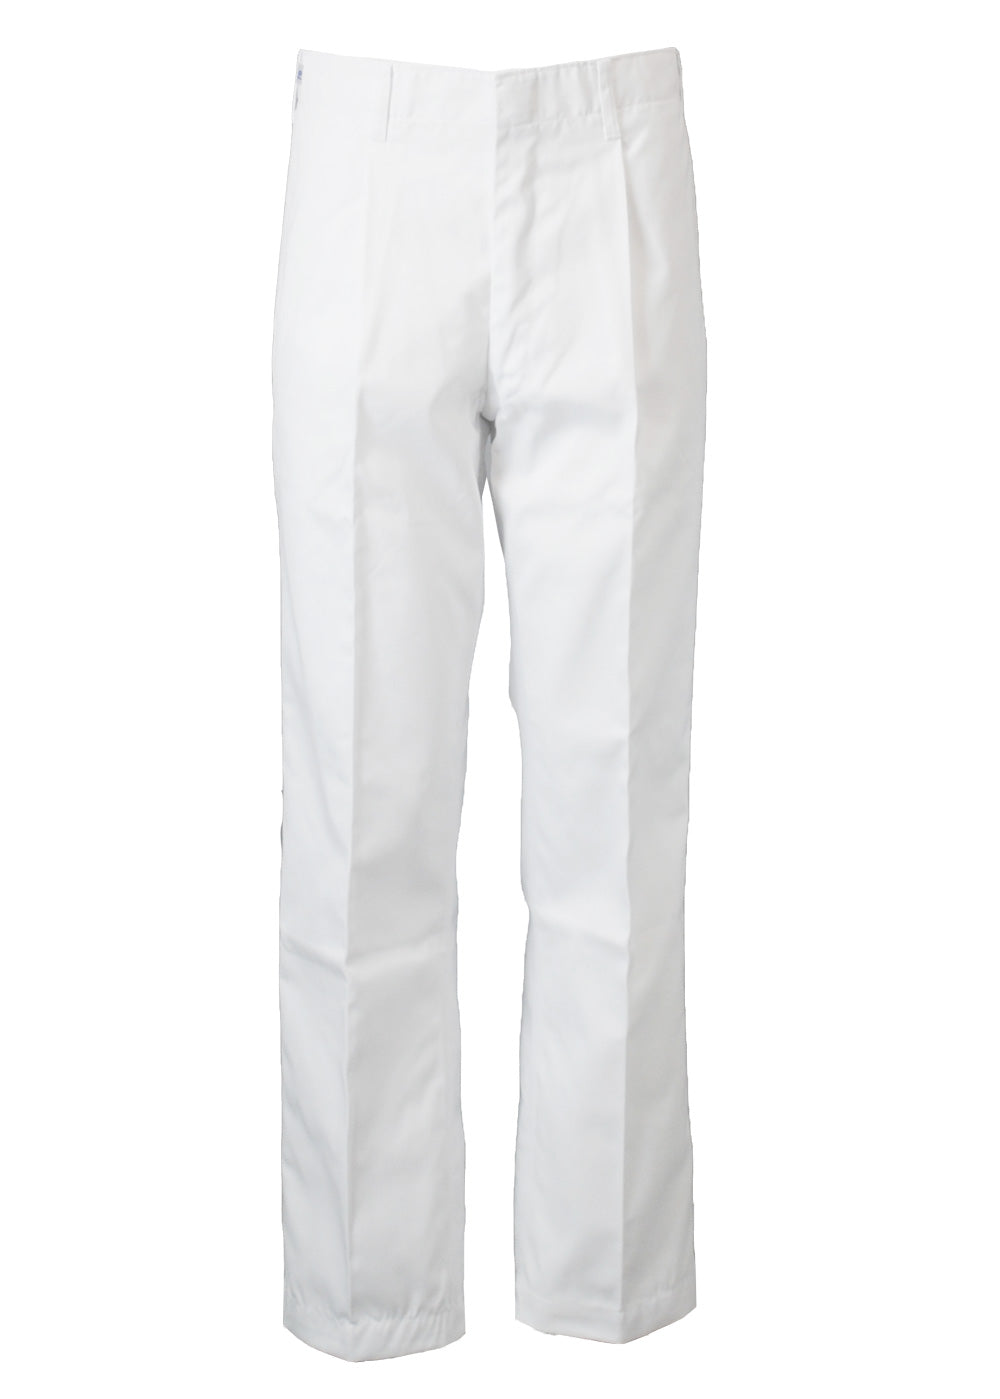 調理 パンツ メンズ 男性用 ズボン 調理衣 白衣 飲食店 コック 厨房 キッチン 調理服 抗菌 白 コクラヤ 760-90